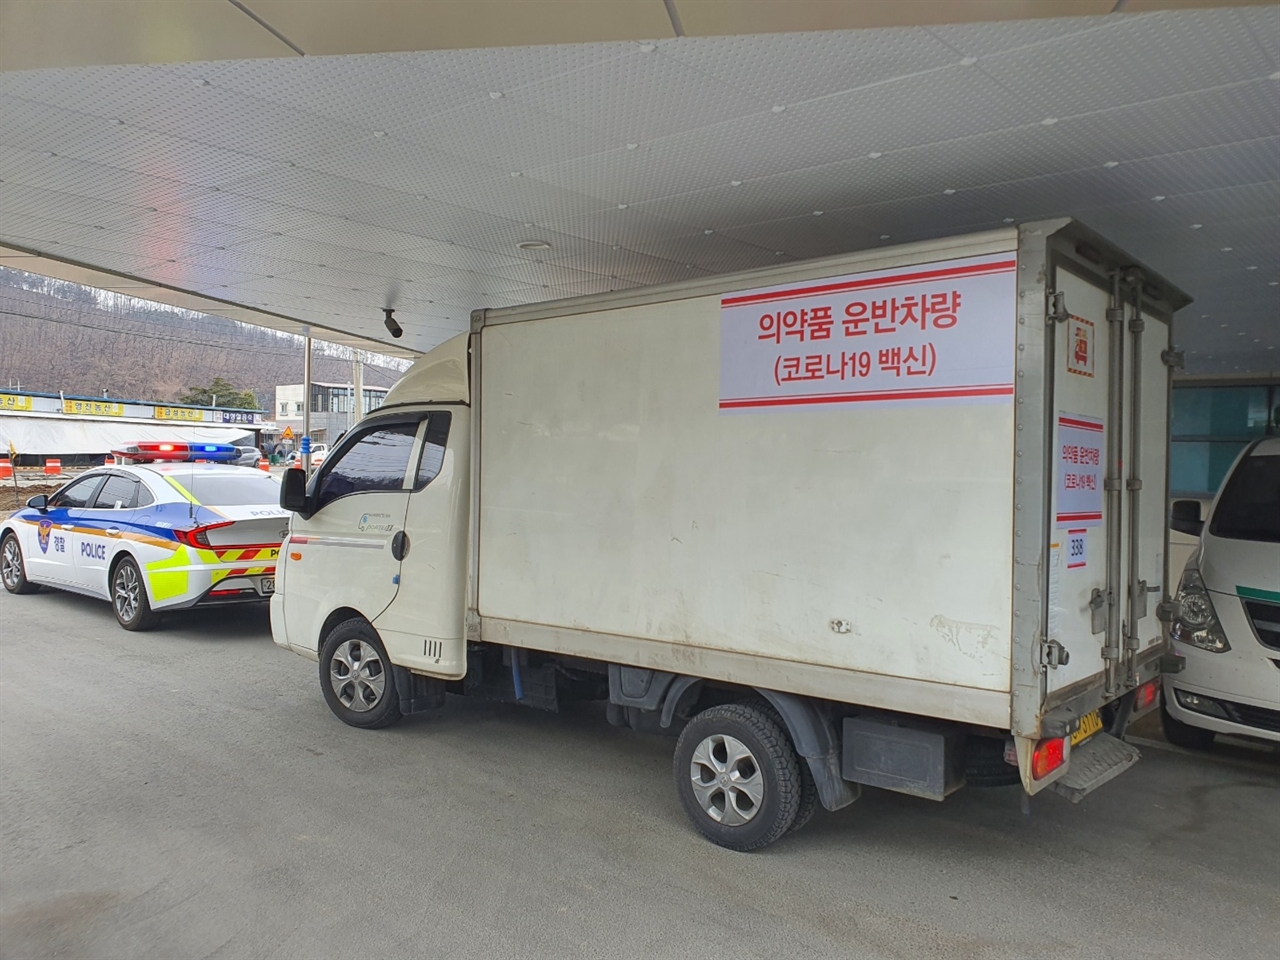 26일 경북 의성군에 코로나19 백신을 실은 차량이 도착해 있다.